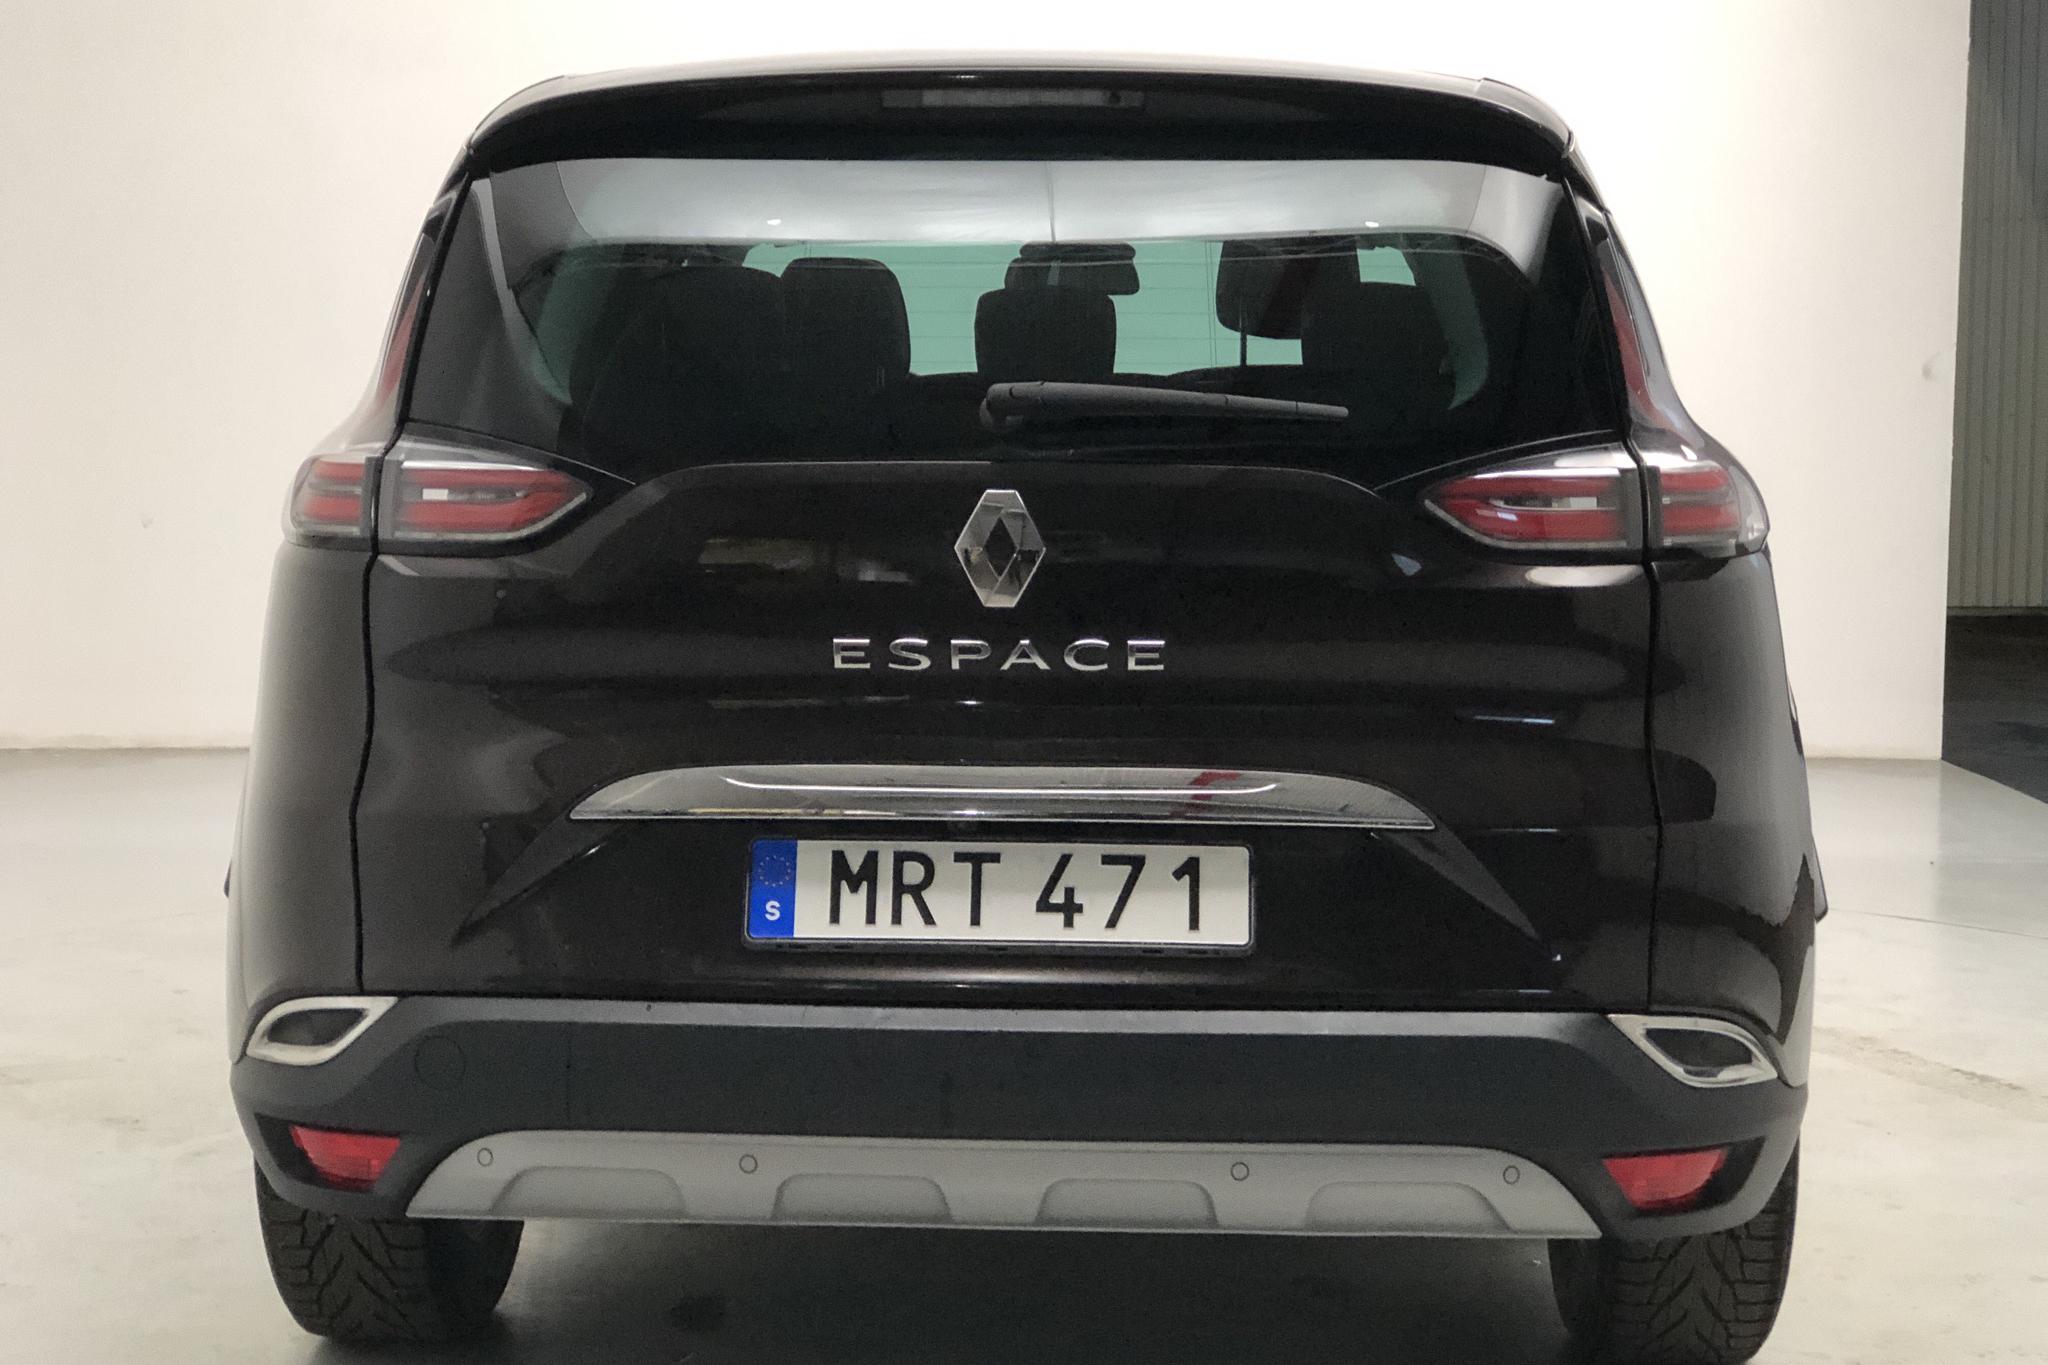 Renault Espace 1.6 dCi (130hk) - 122 640 km - Manual - brown - 2015